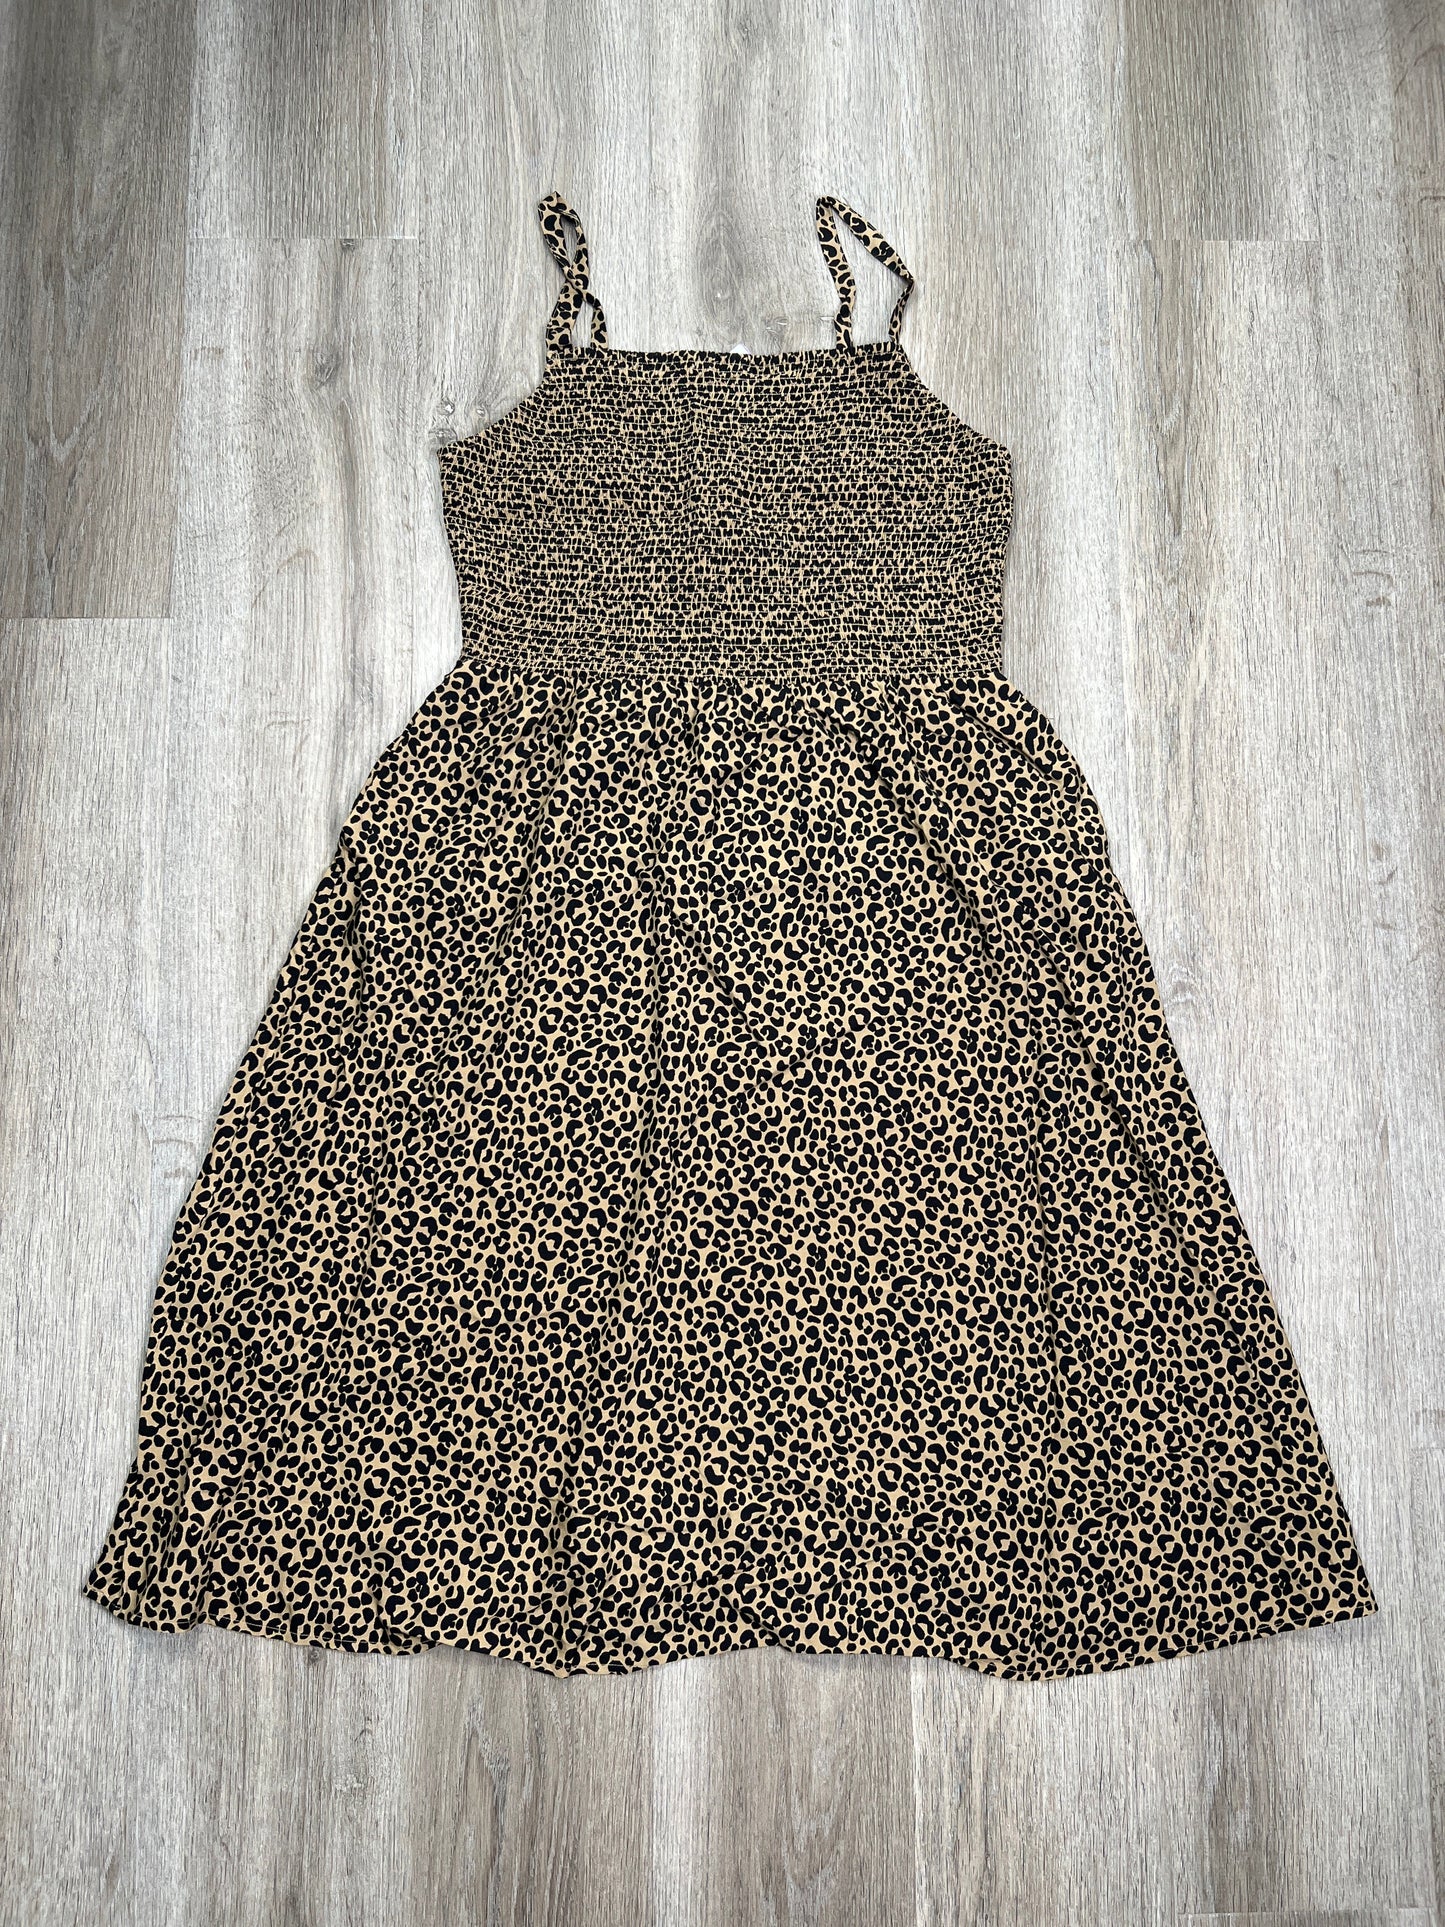 Leopard Print Dress Casual Midi Old Navy, Size L